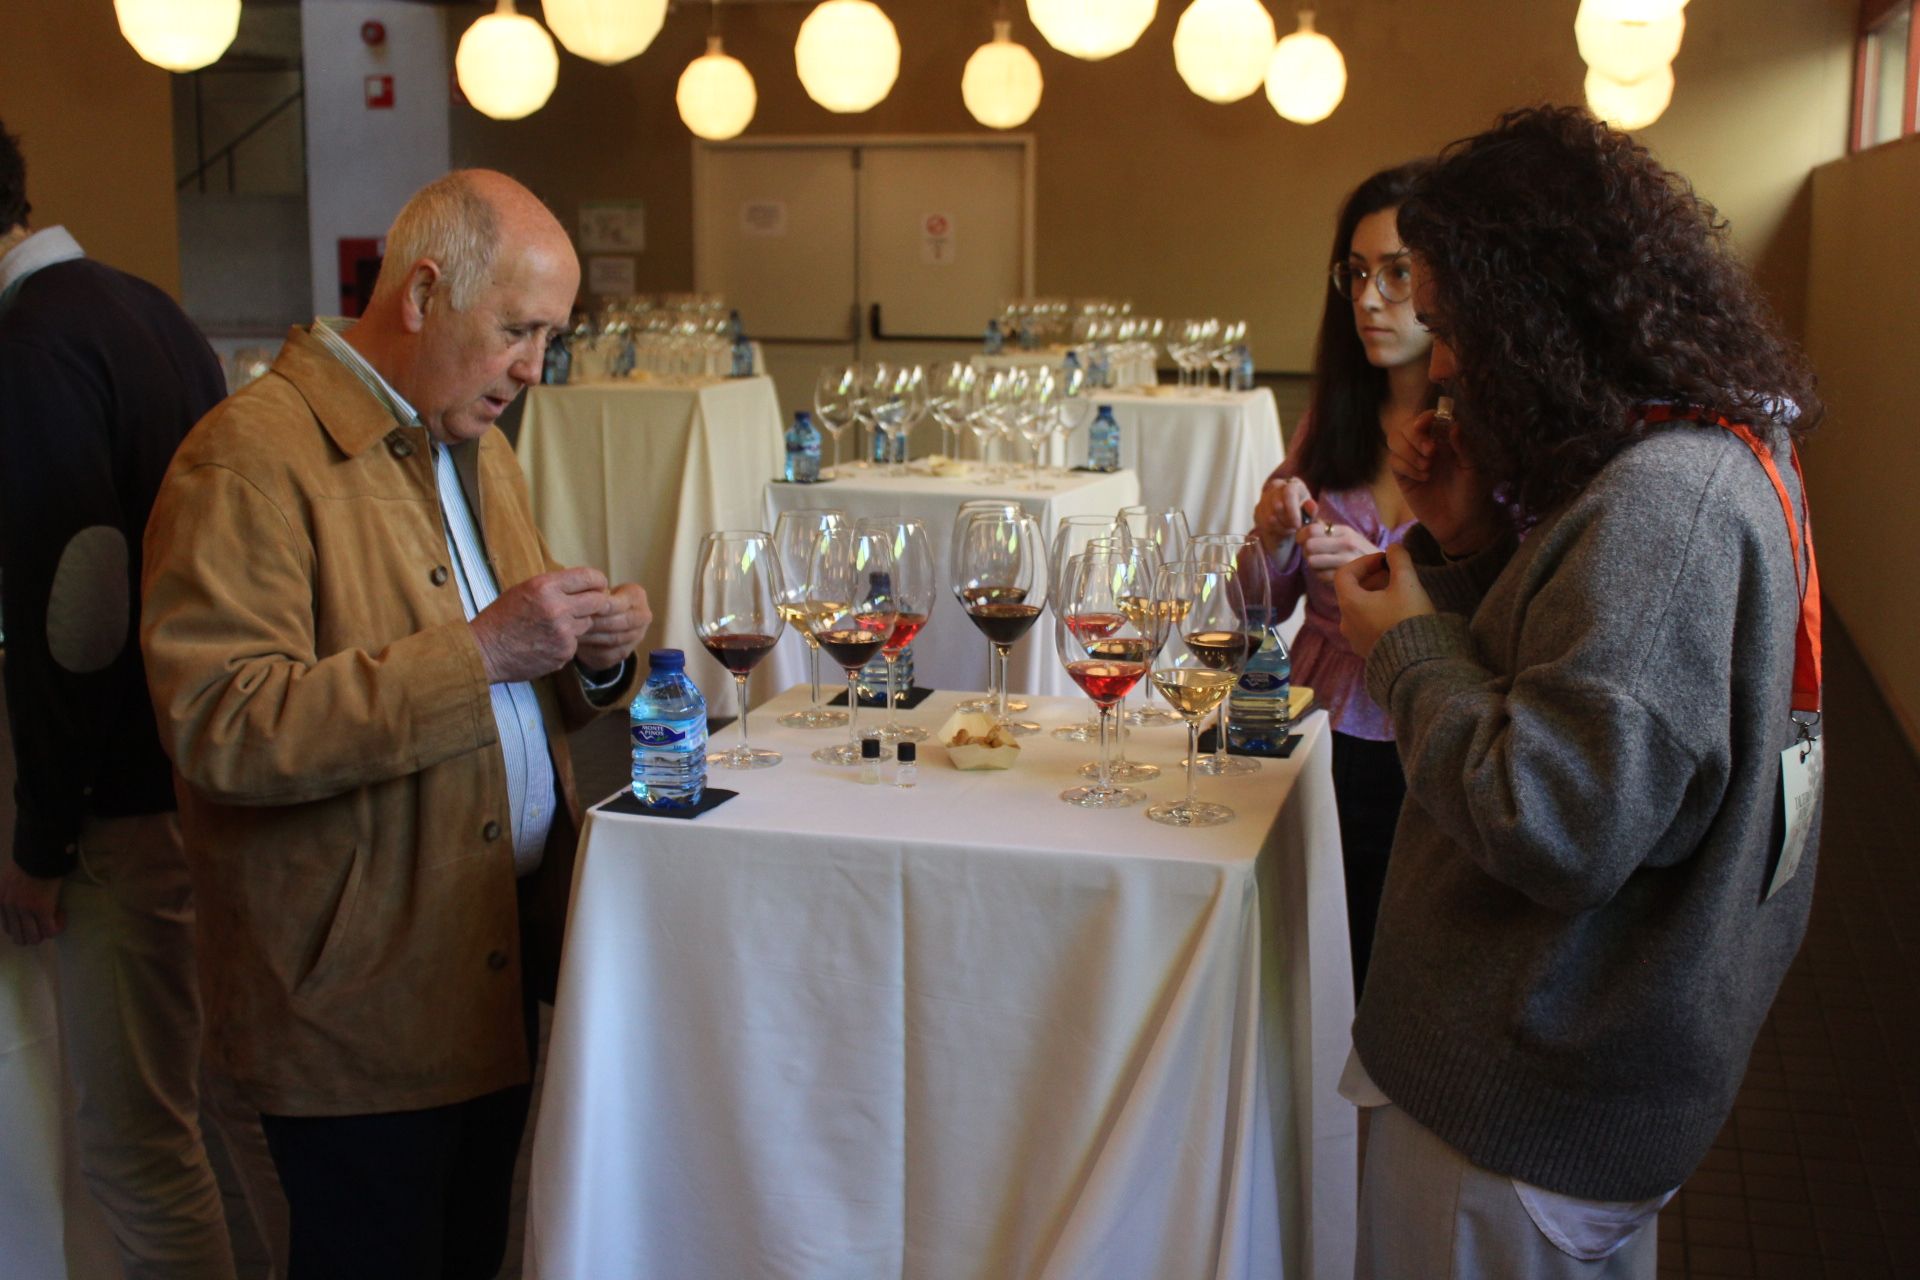  Segunda jornada del Congreso Duero Wine Fest. Fotos Carlos H.G